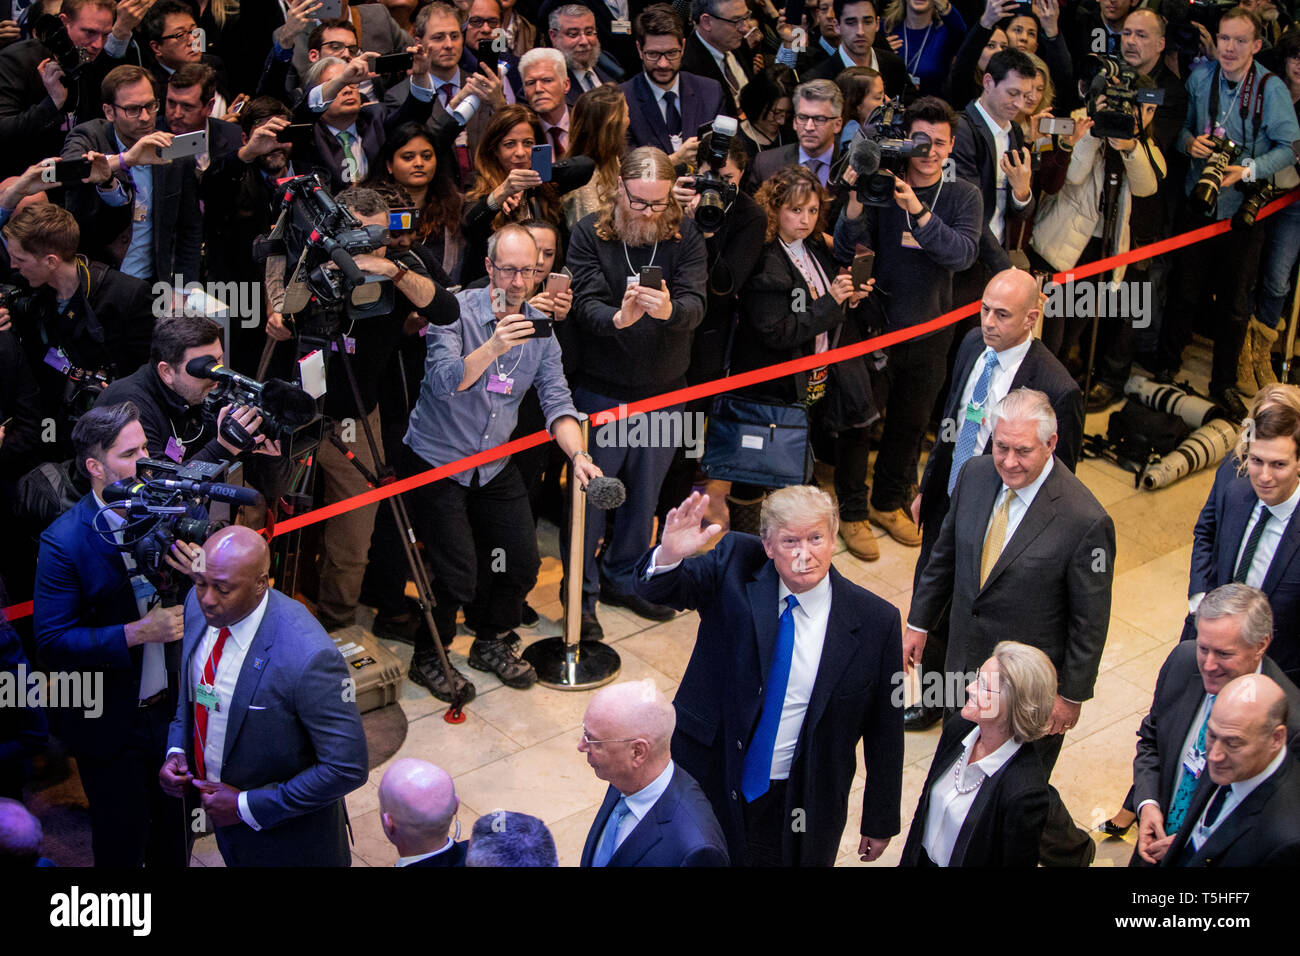 Massive Menge im Kongresszentrum Davos als US-Präsident Donald J. Trumpf kommt zum World Economic Forum. Hinter ihm in der Entourage kann Rex Tillerson, Mark Wiesen, Jared Kushner und Gary Cohn gesehen werden. Stockfoto